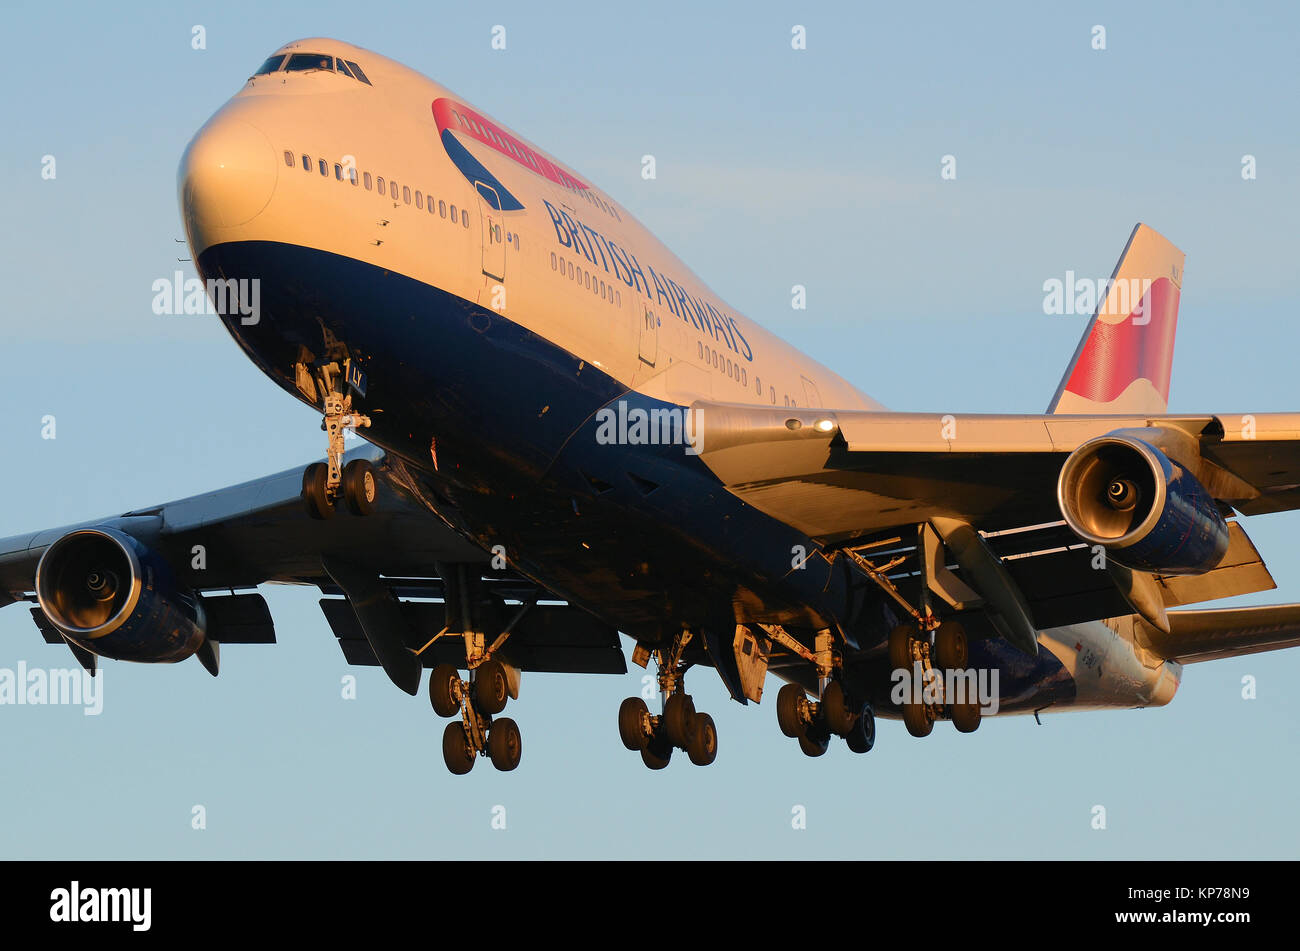 British Airways Boeing 747 -400 Jumbo Jet Flugzeug G-BNLY landet am Flughafen London Heathrow, Großbritannien Stockfoto